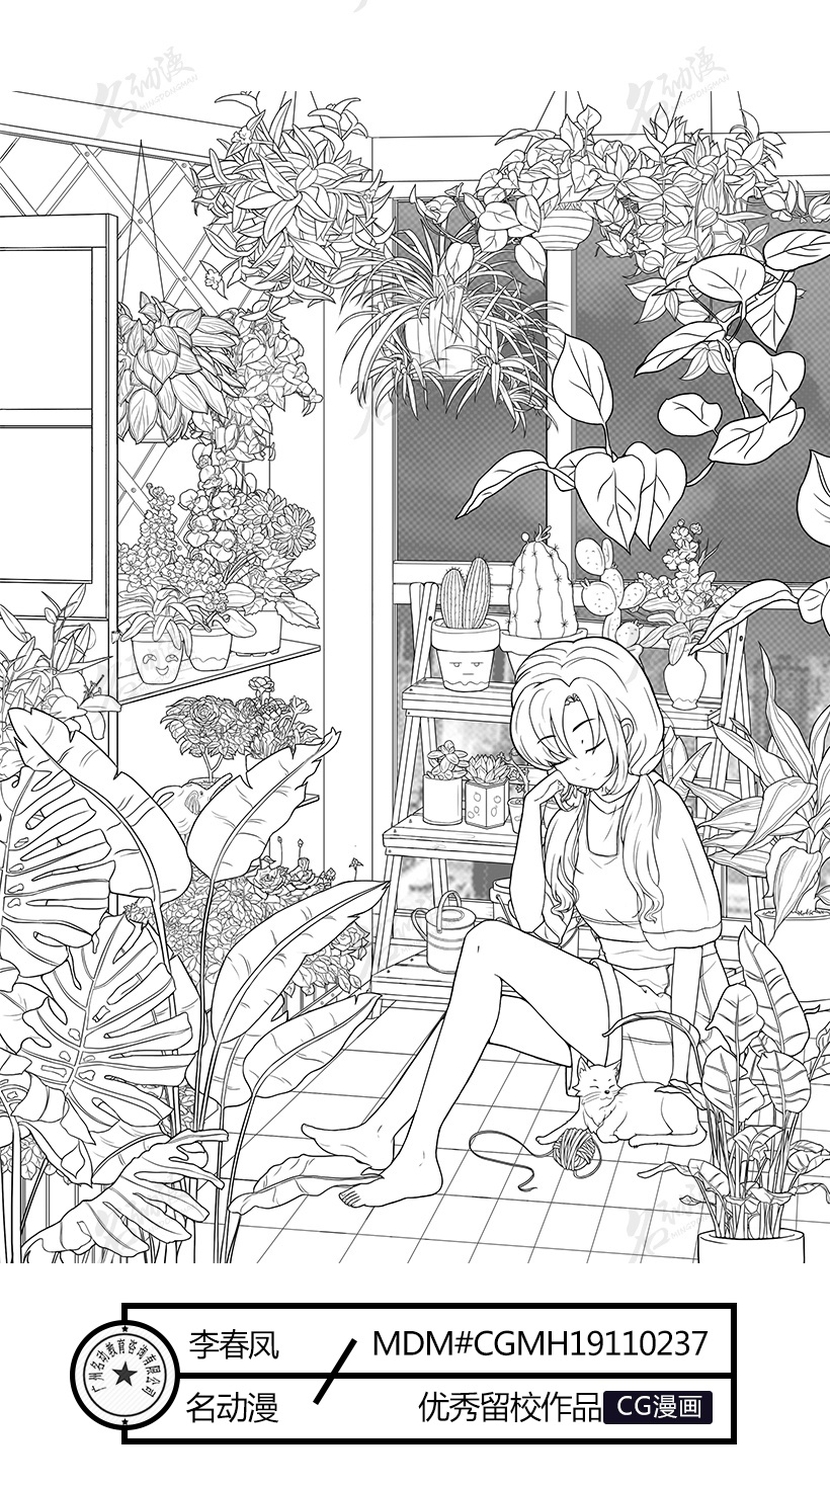 休息中的花店少女插画图片壁纸